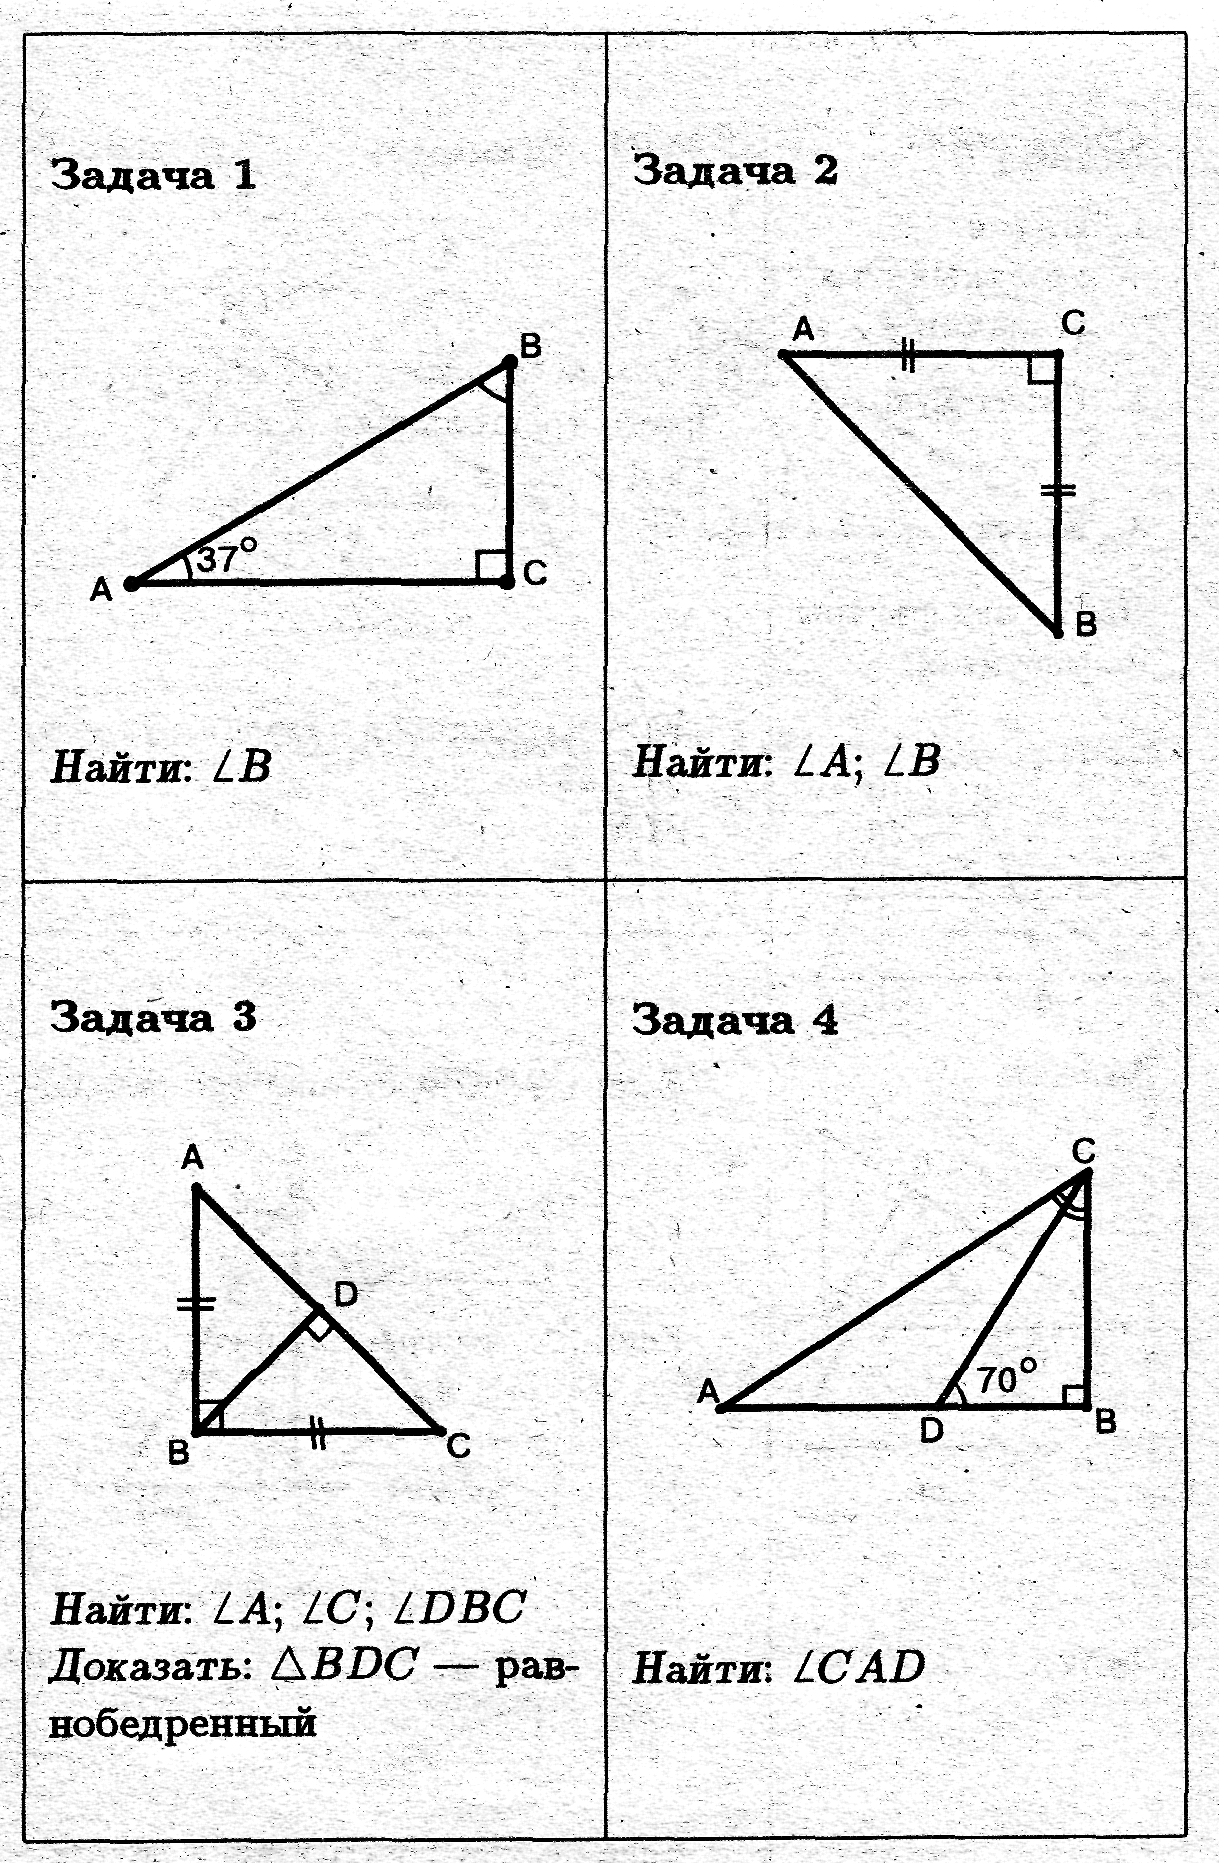 Геометрия 7 класс легкие. Задачи на прямоугольный треугольник 7 класс по готовым чертежам. Свойства прямоугольного треугольника задачи на готовых чертежах. Задачи на прямоугольный треугольник 7 класс. Задачи по геометрии 7 класс прямоугольные треугольники.